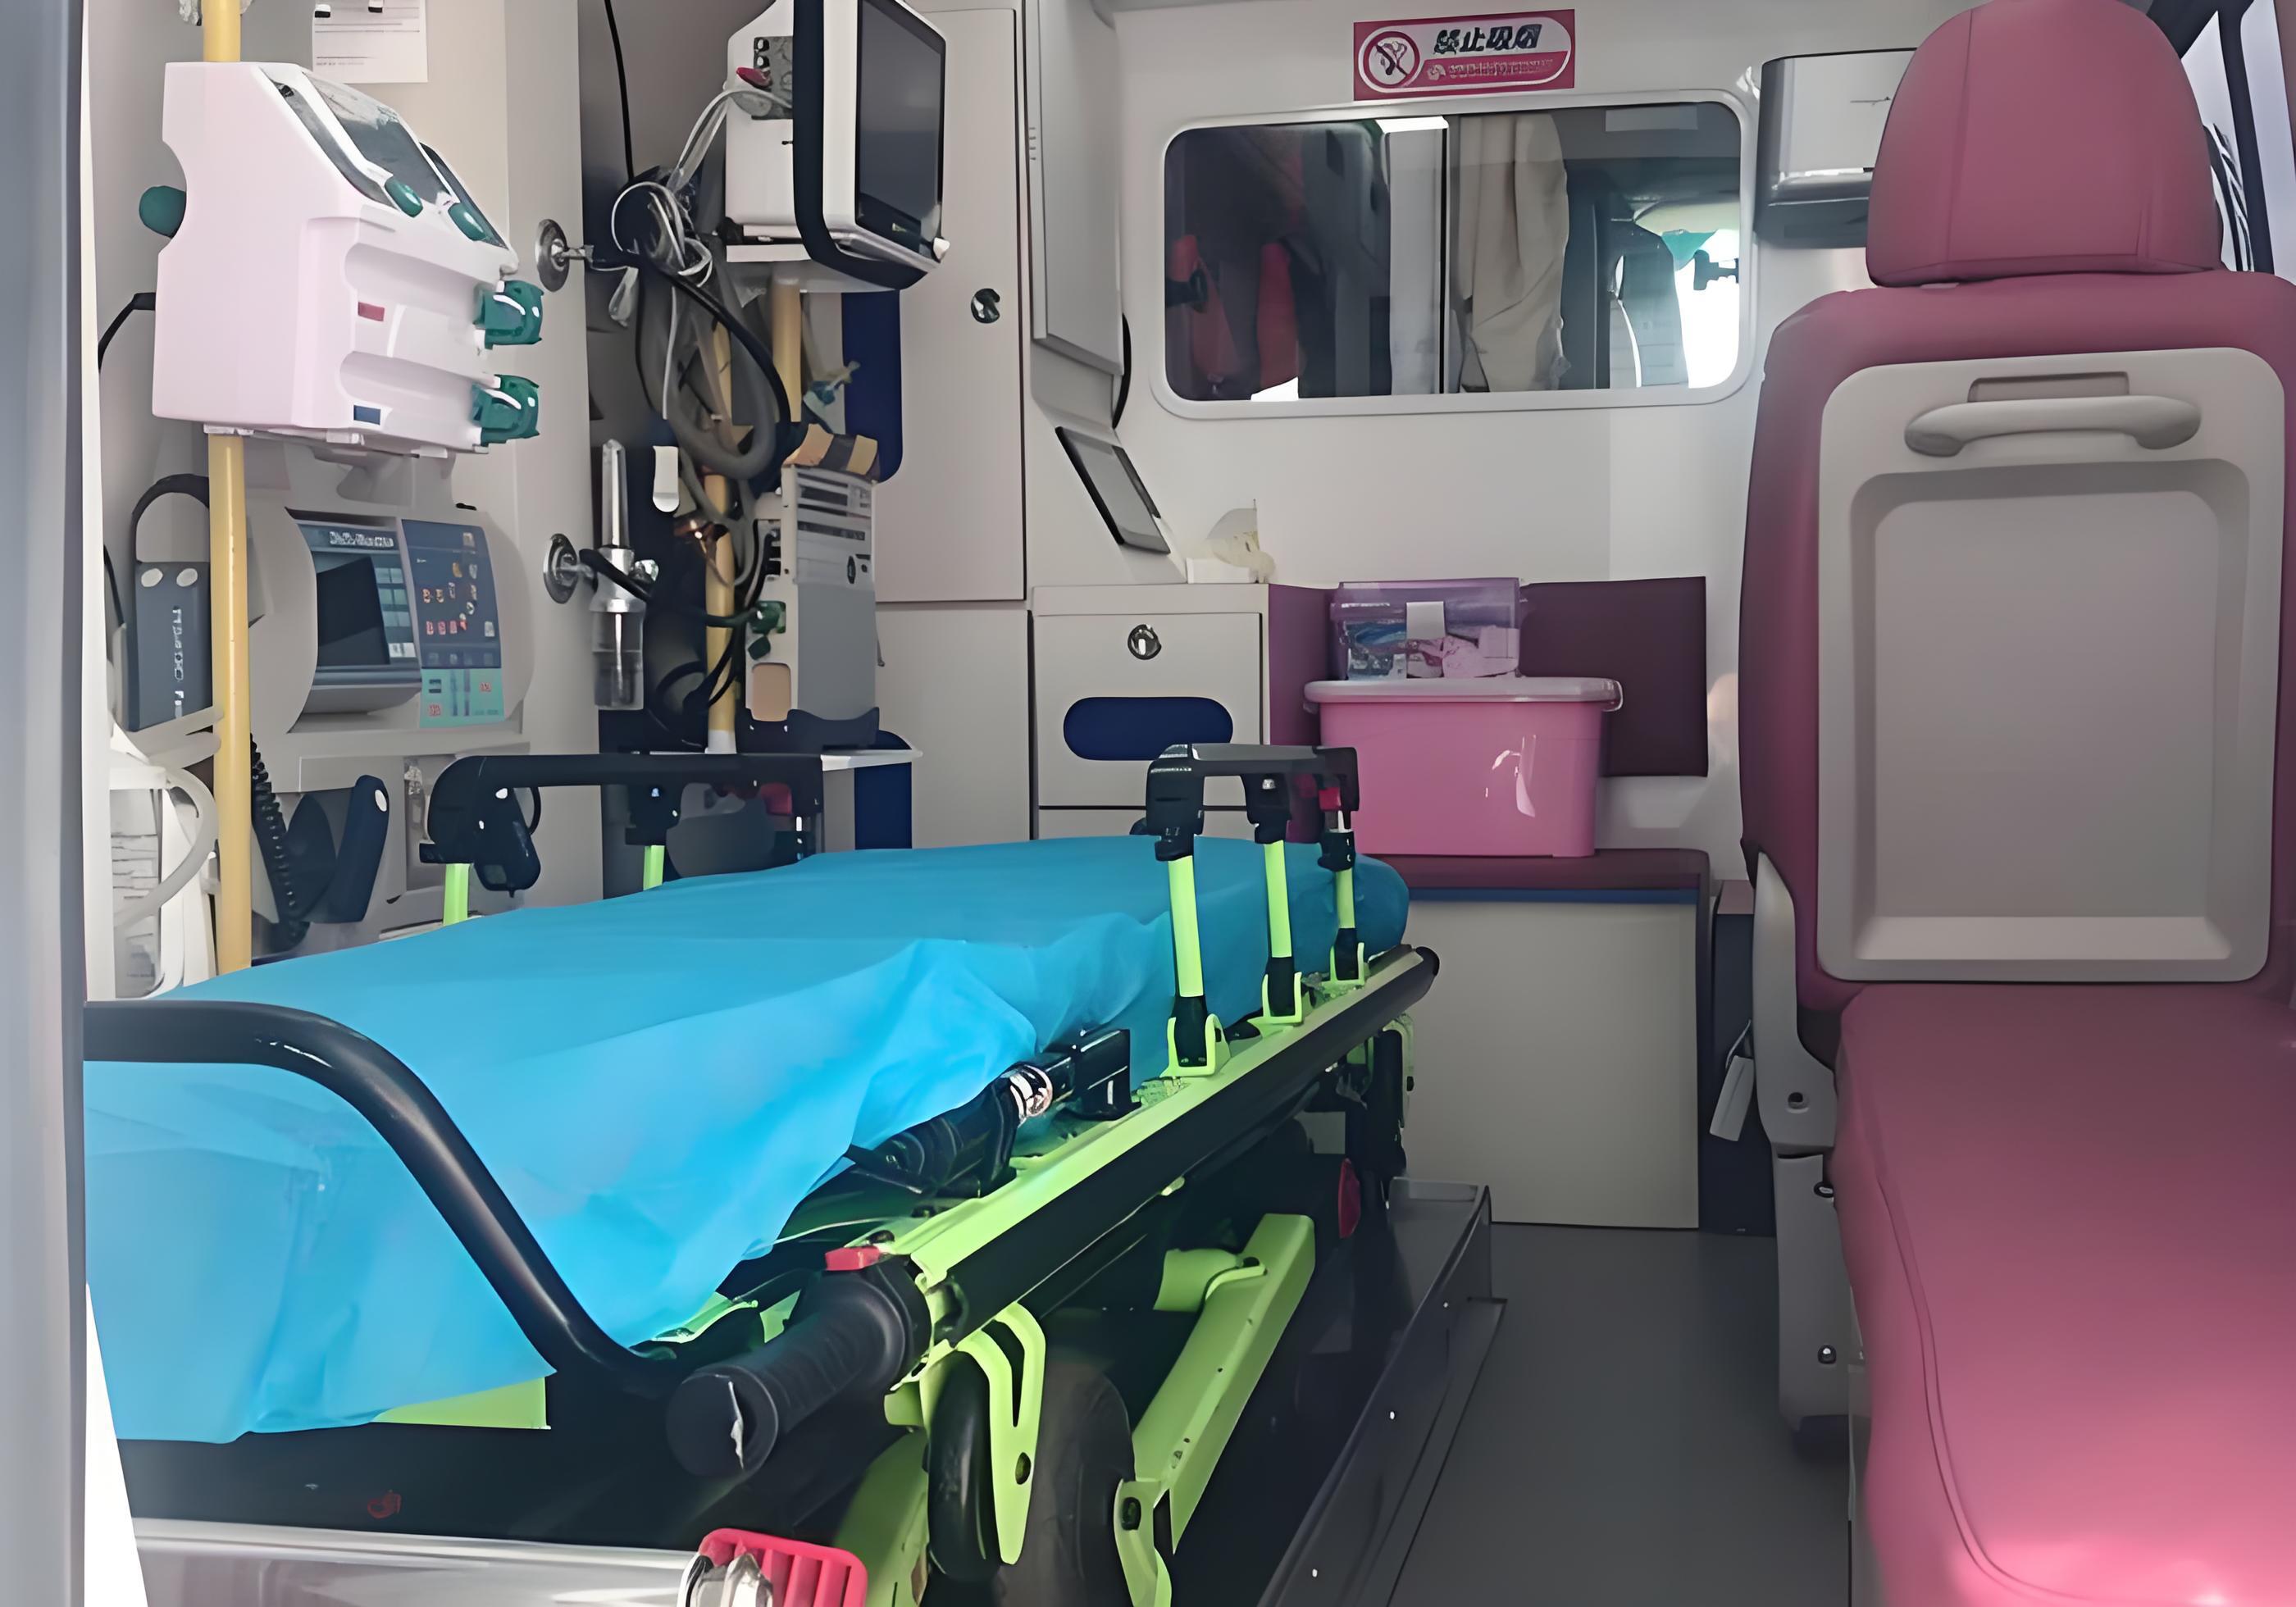 惠州救护车出租公司-120转运中心-团队派遣